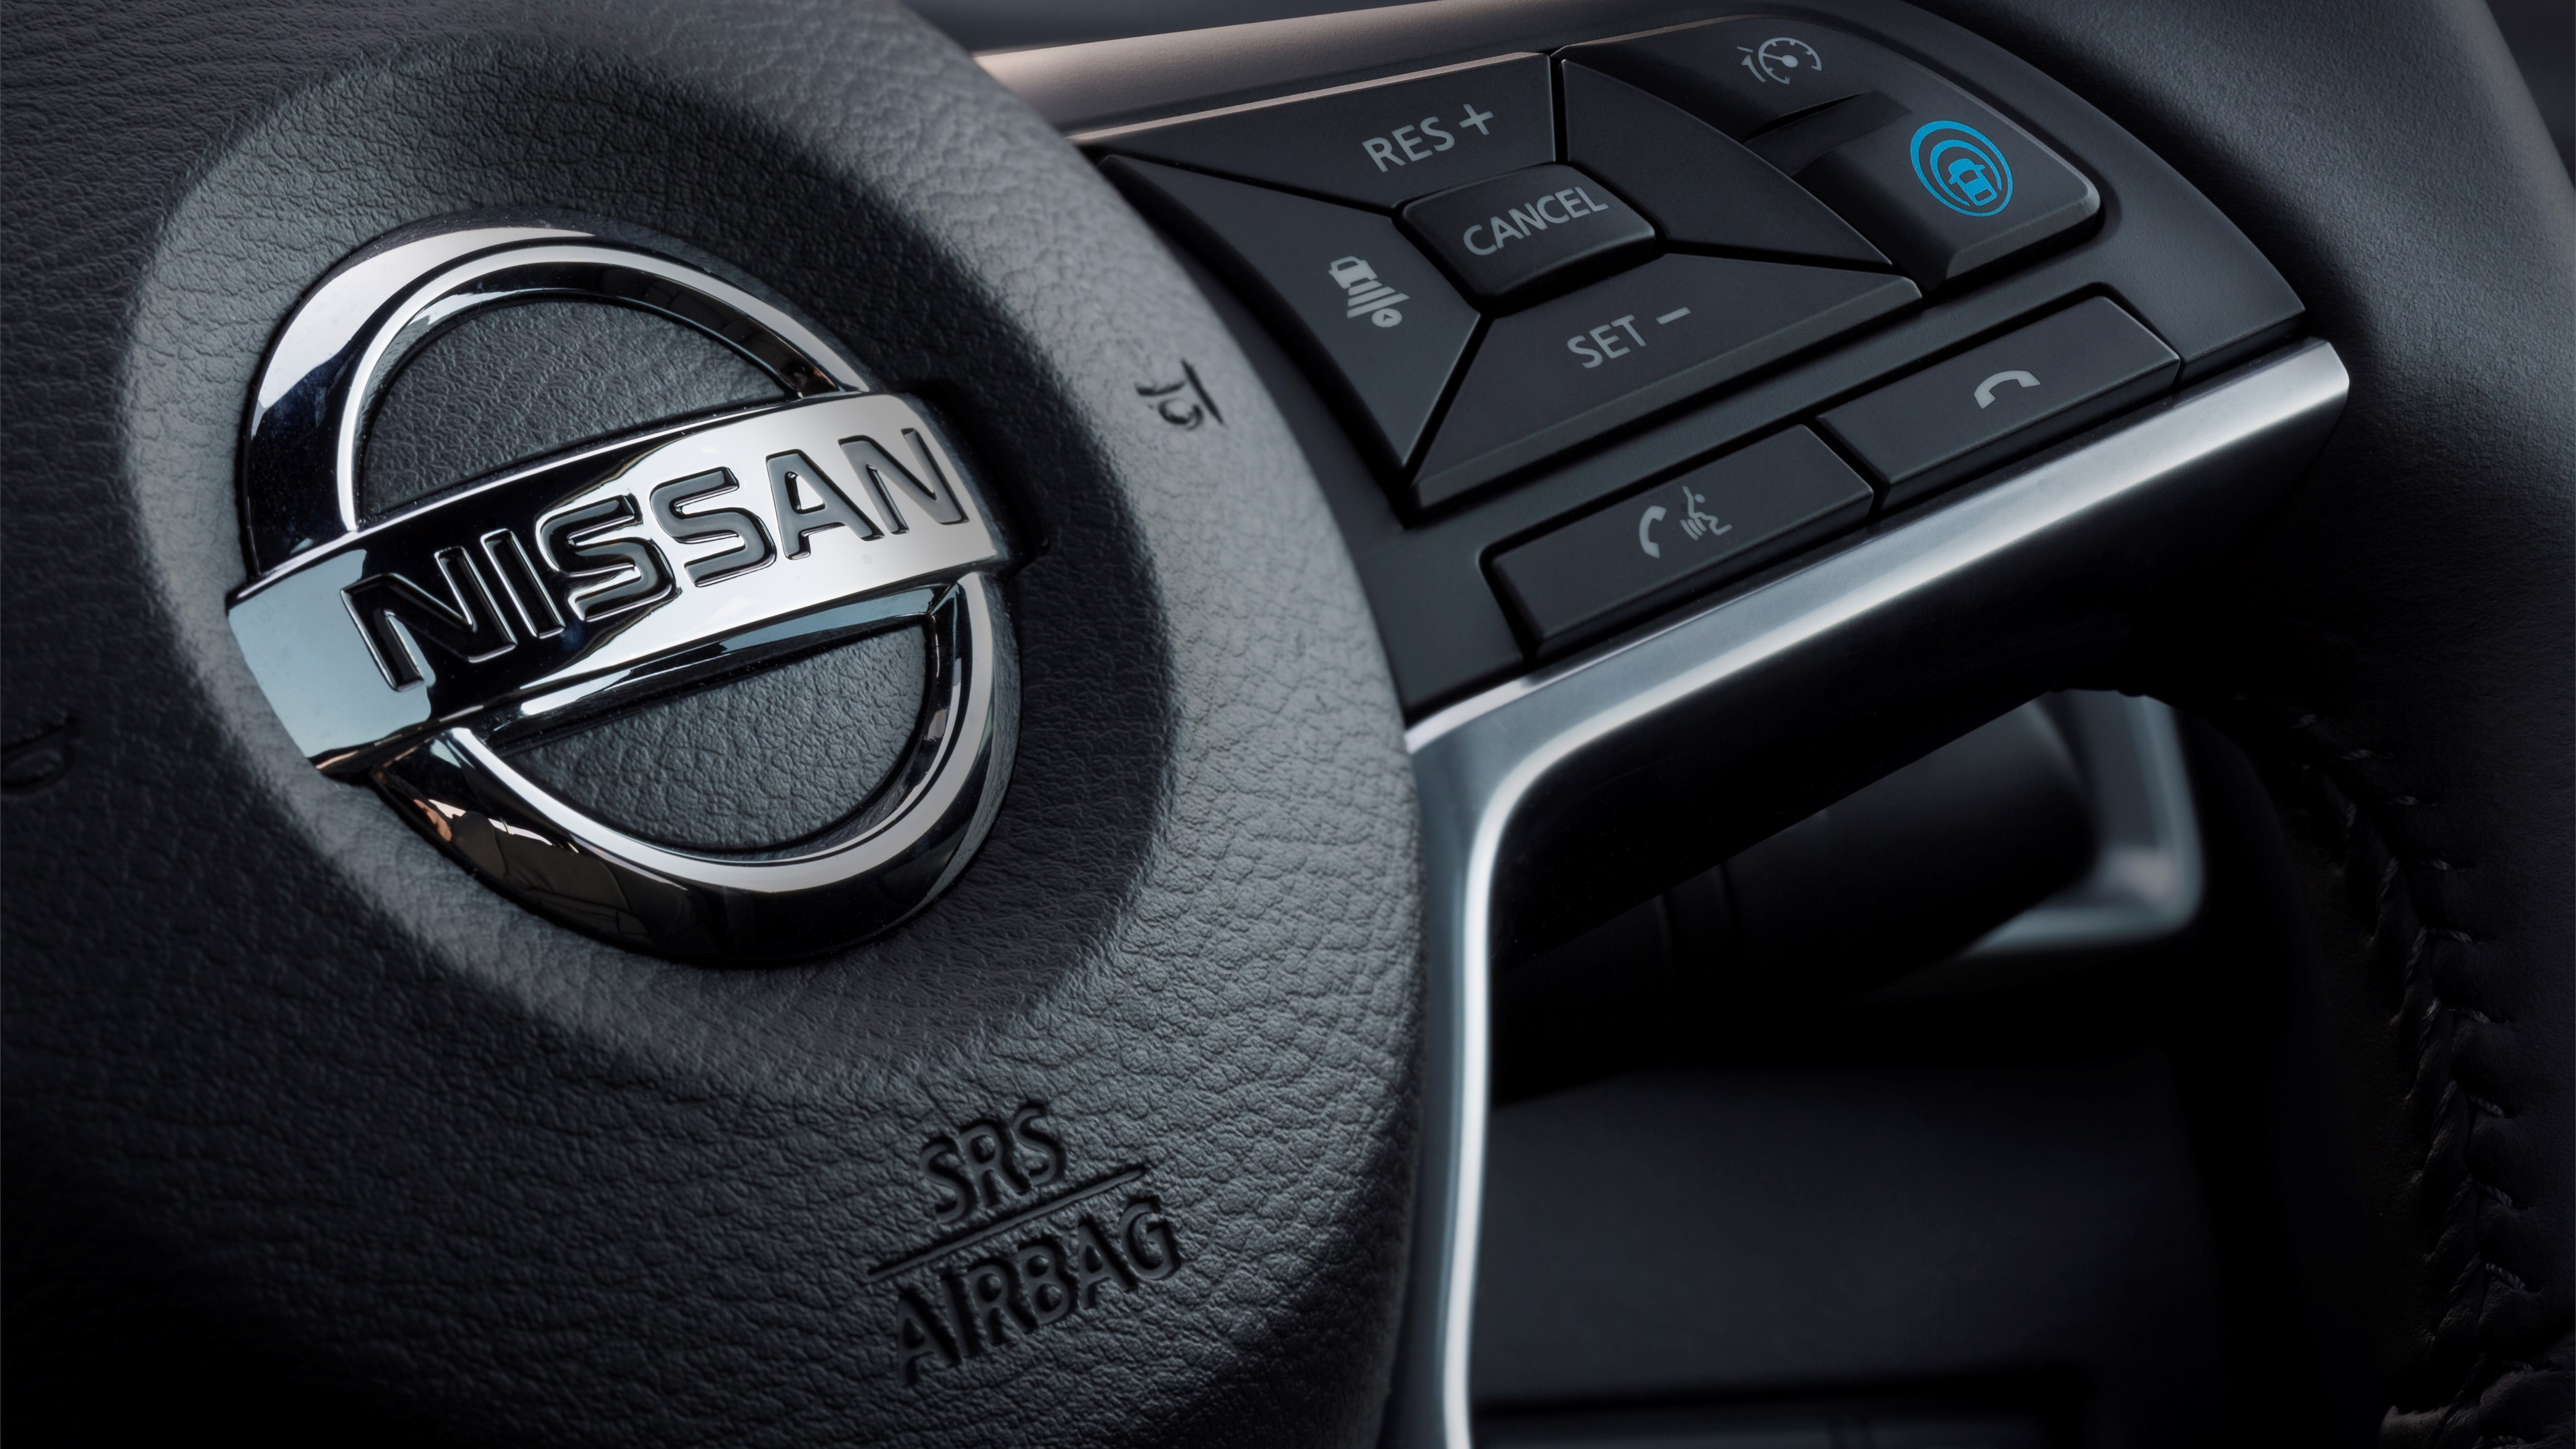 The 2018 Nissan Qashquai features ProPilot Assist lane-holding technology